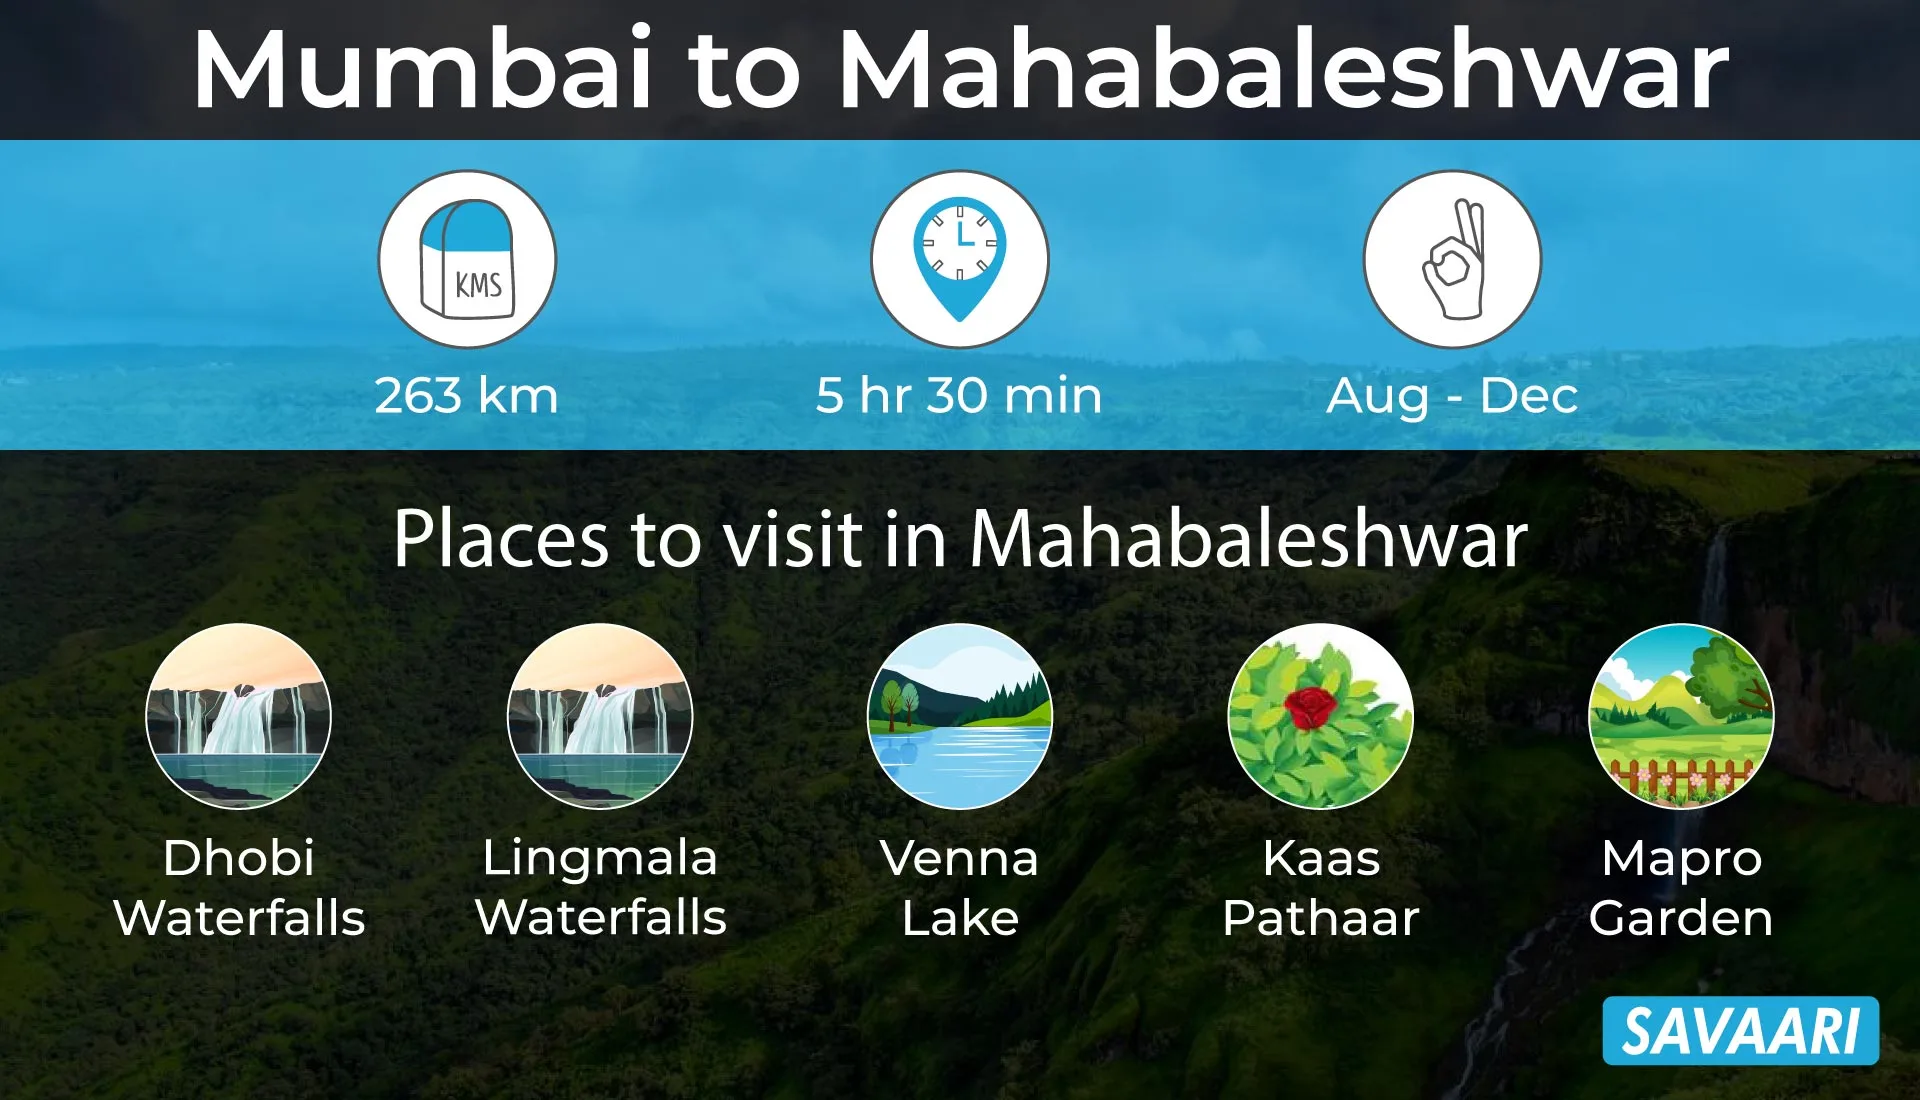 Mubai to Mahabaleshwar weekend getaway